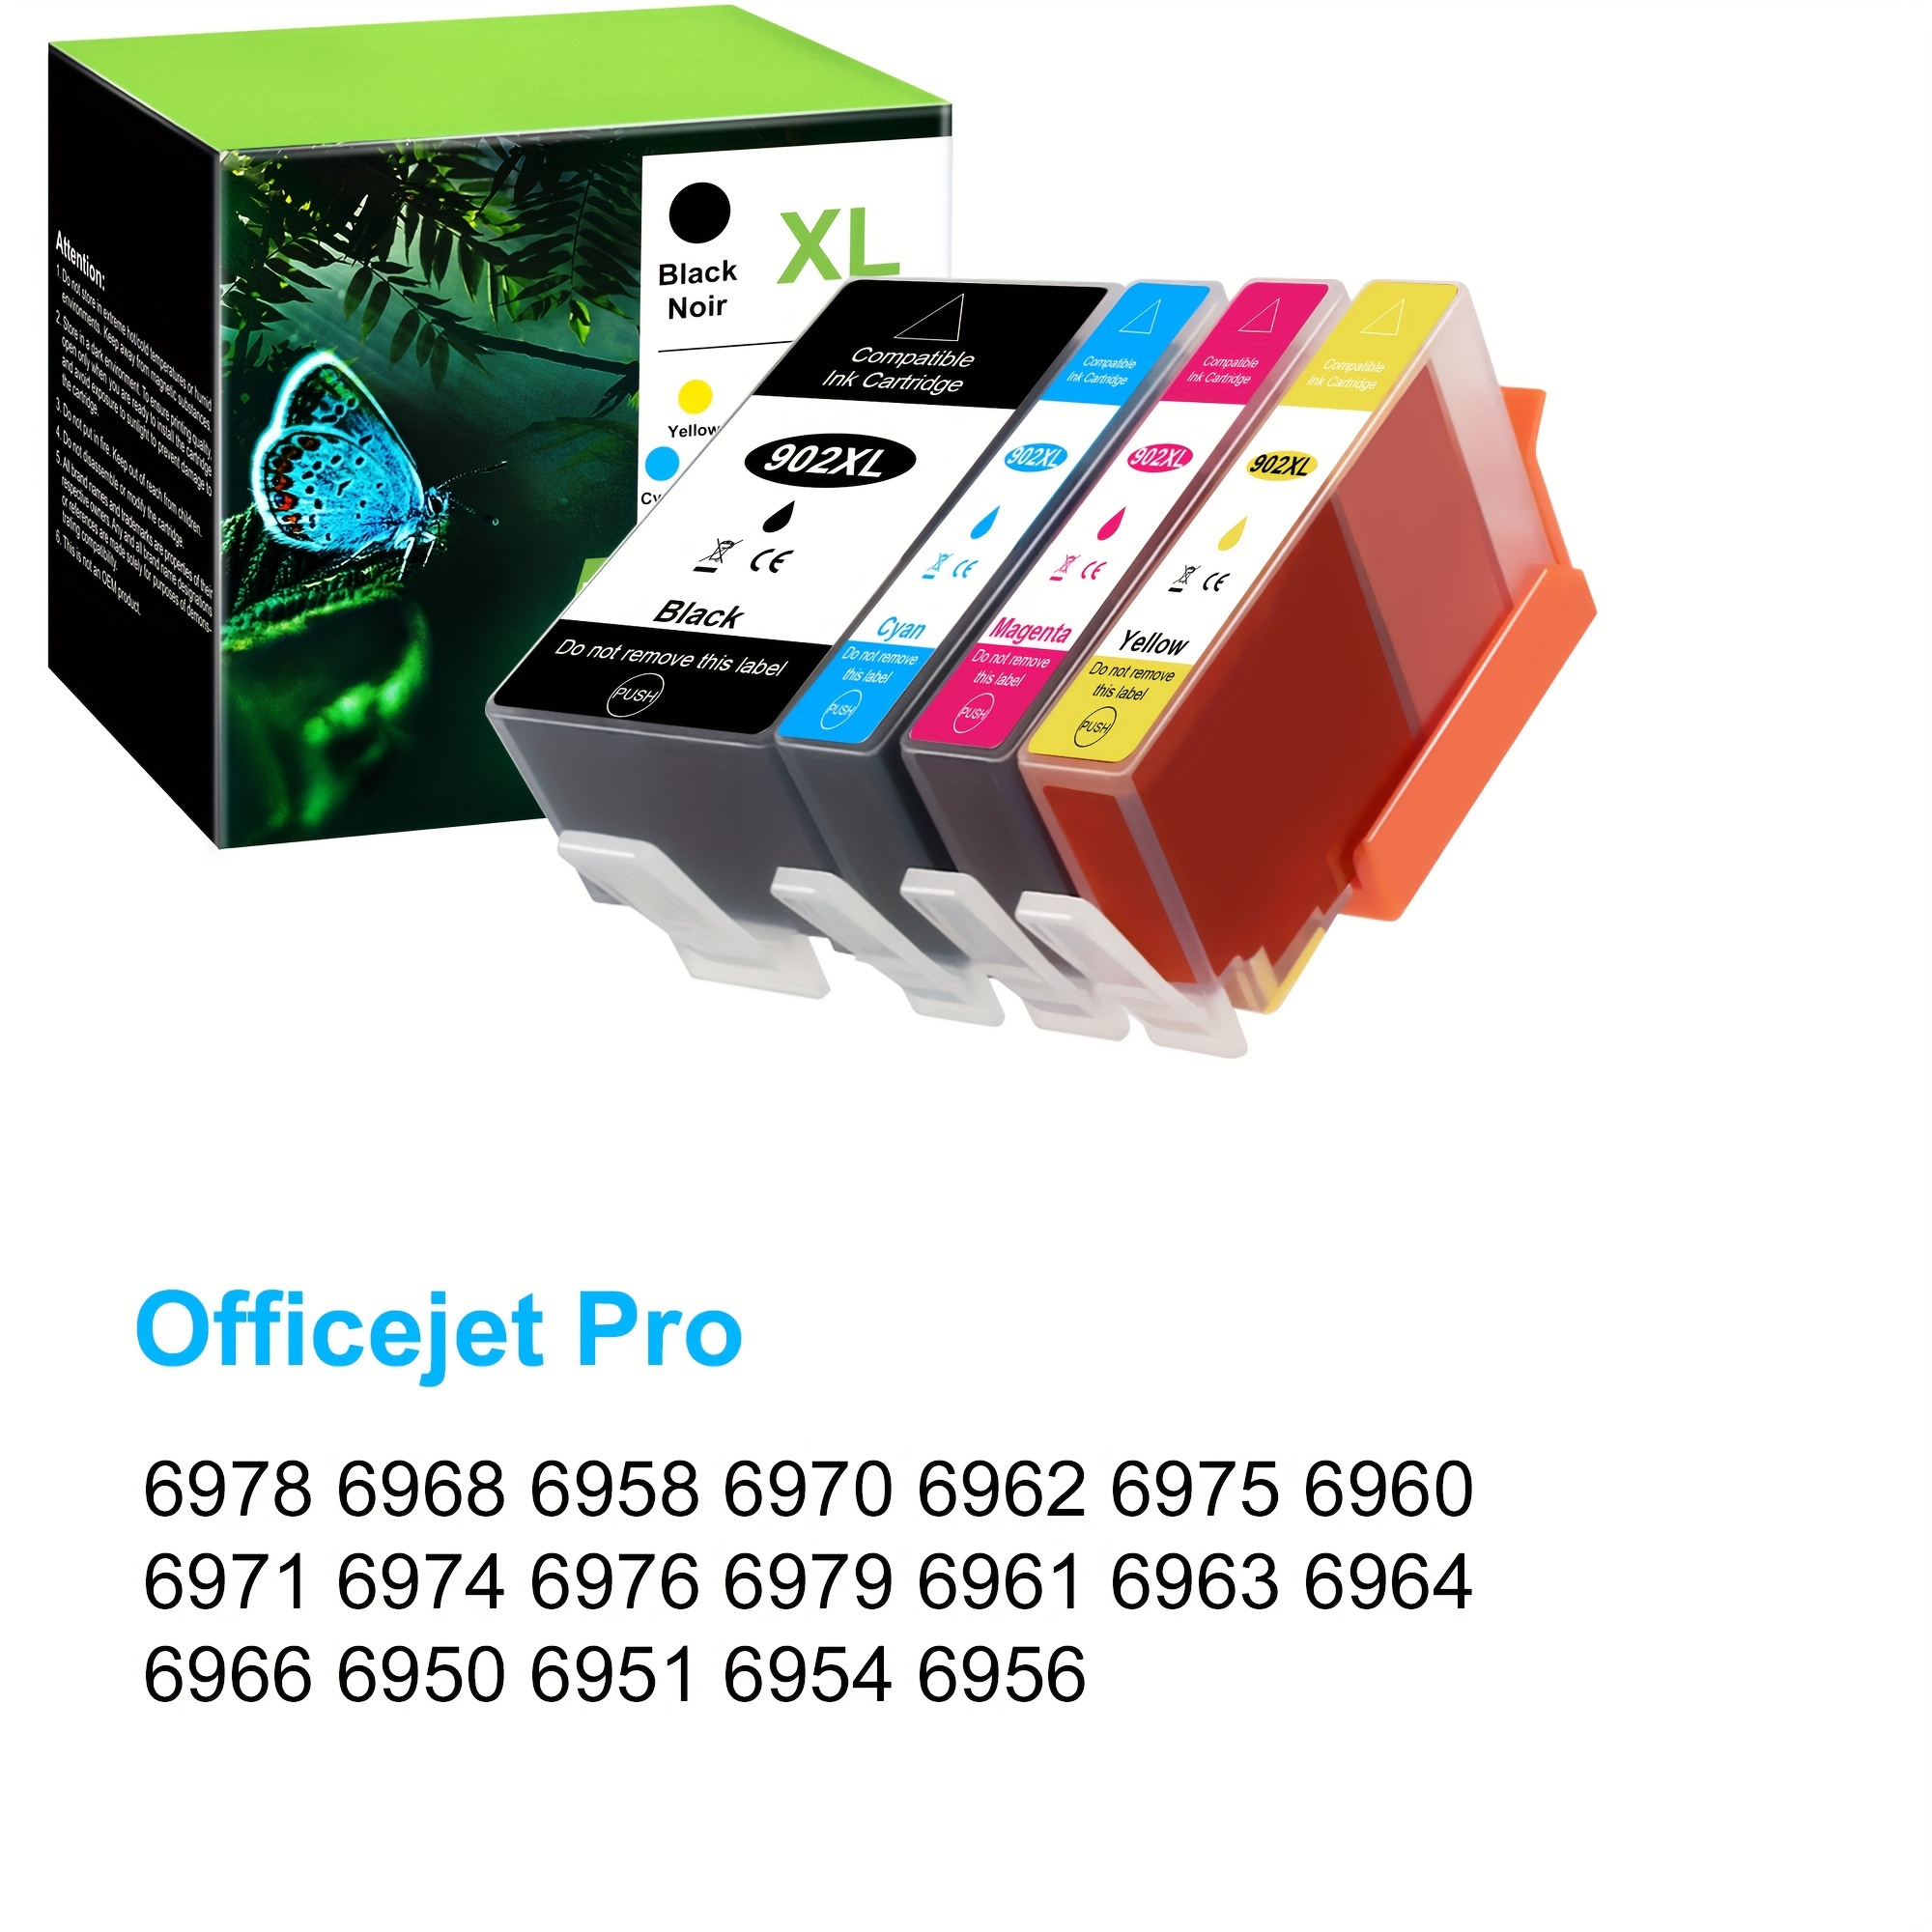 HP Officejet Pro 6970, 6975